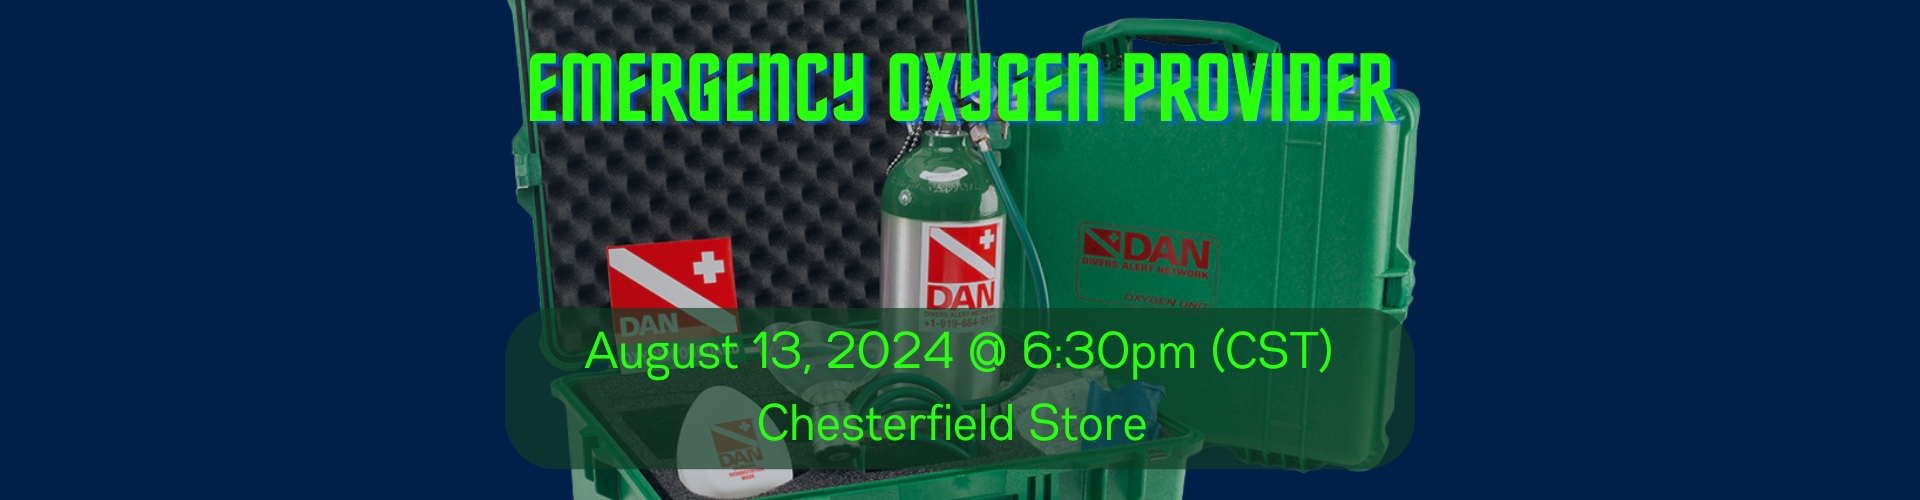 8/13 Emergency O2 Provider